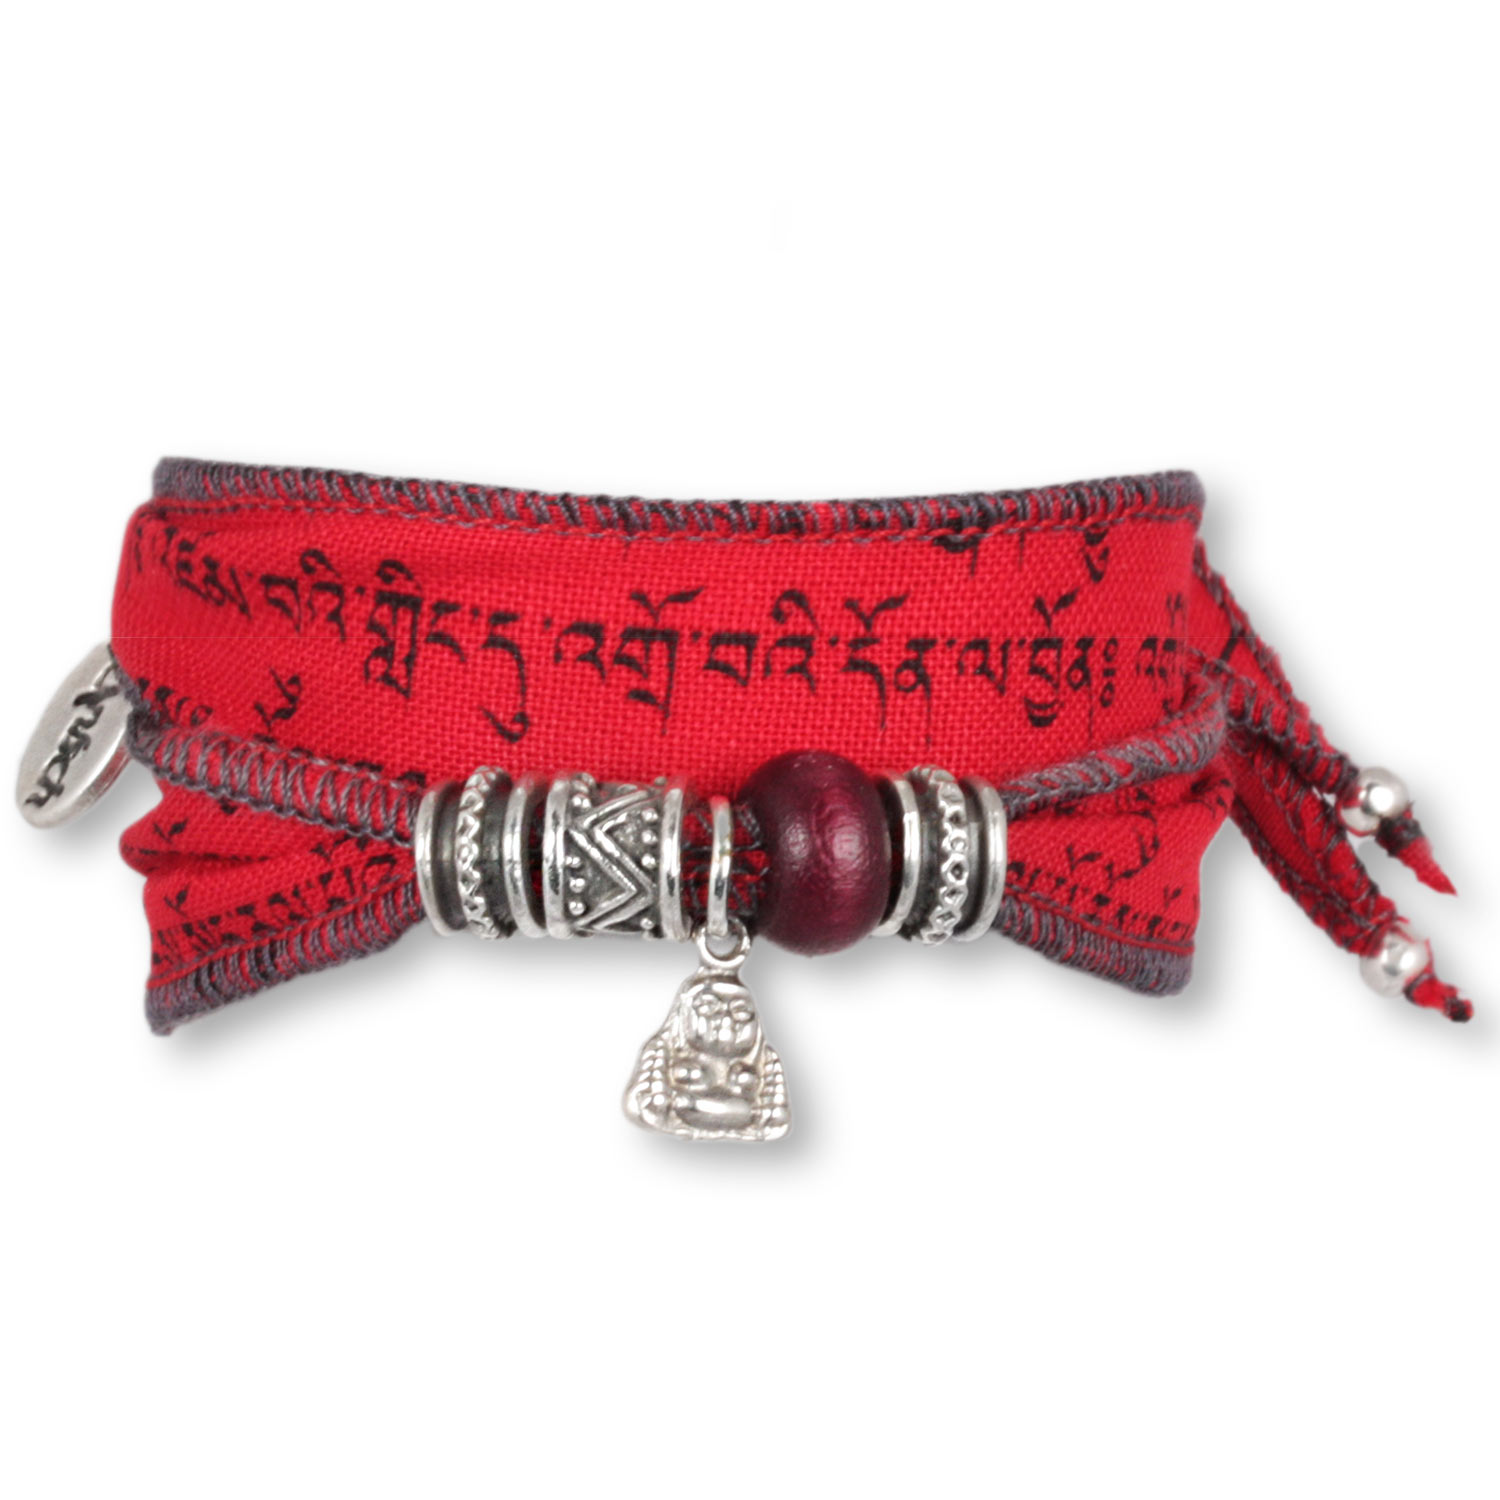 Fire Little Buddha - Tibetan Wish bracelet made from Tibetan prayer flags